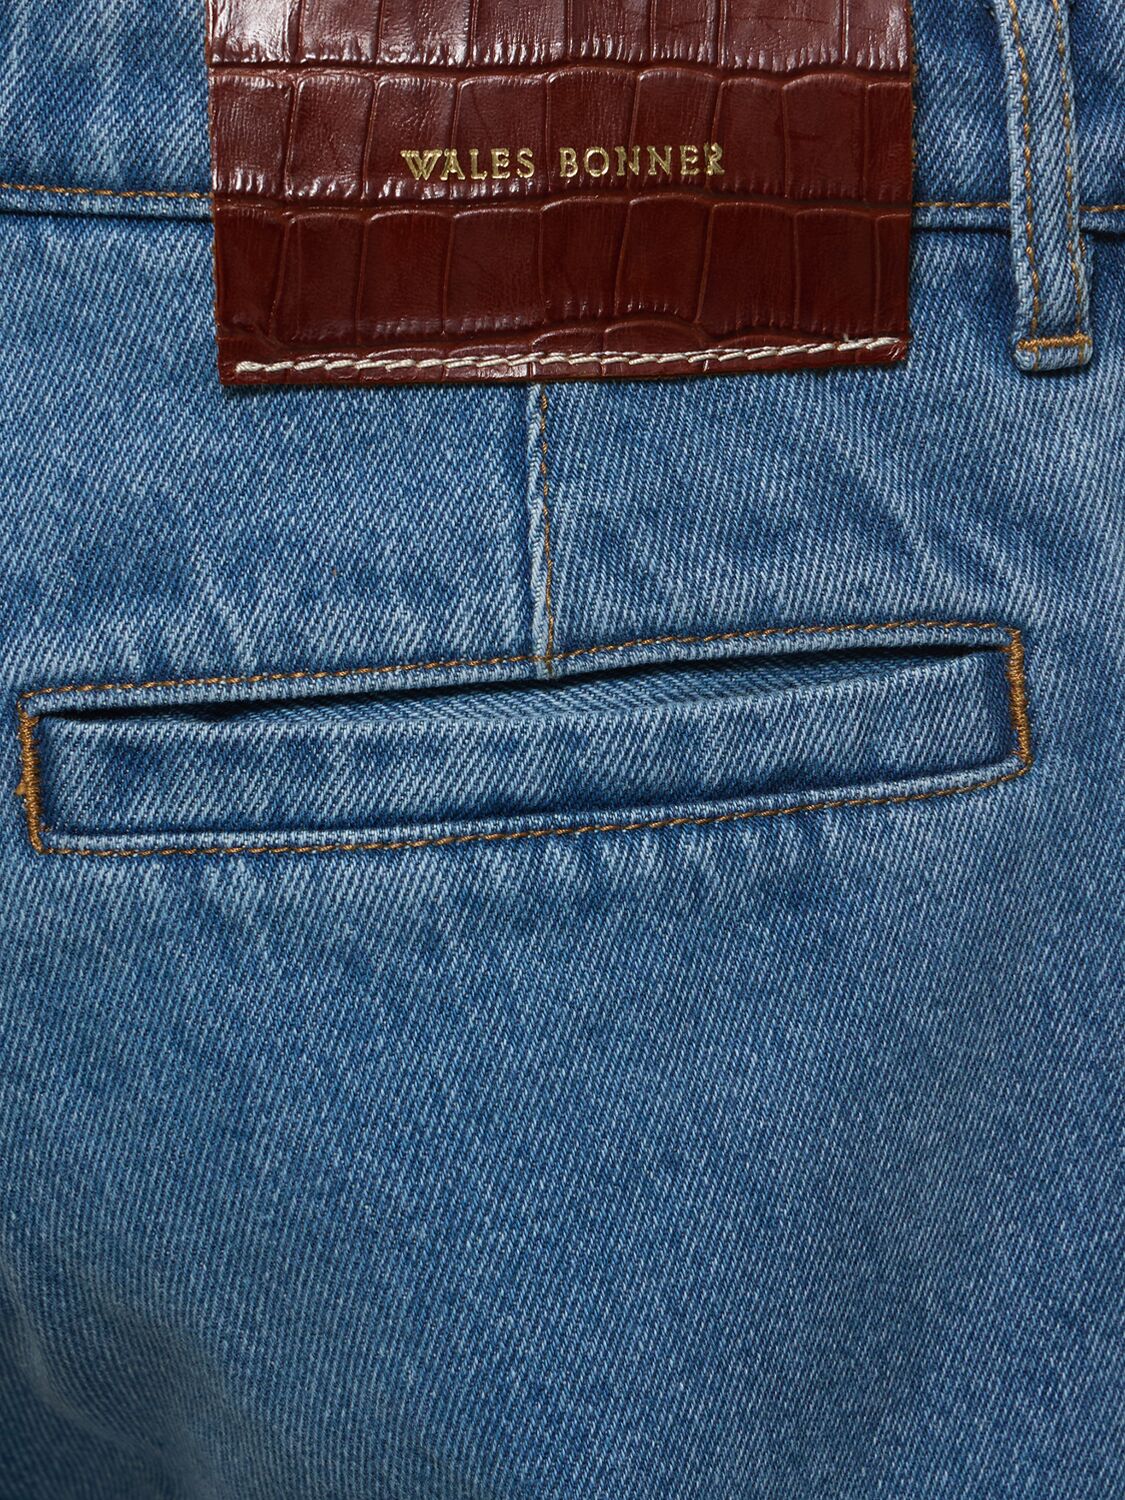 Shop Wales Bonner Eternity Cotton Denim Jeans In Light Blue